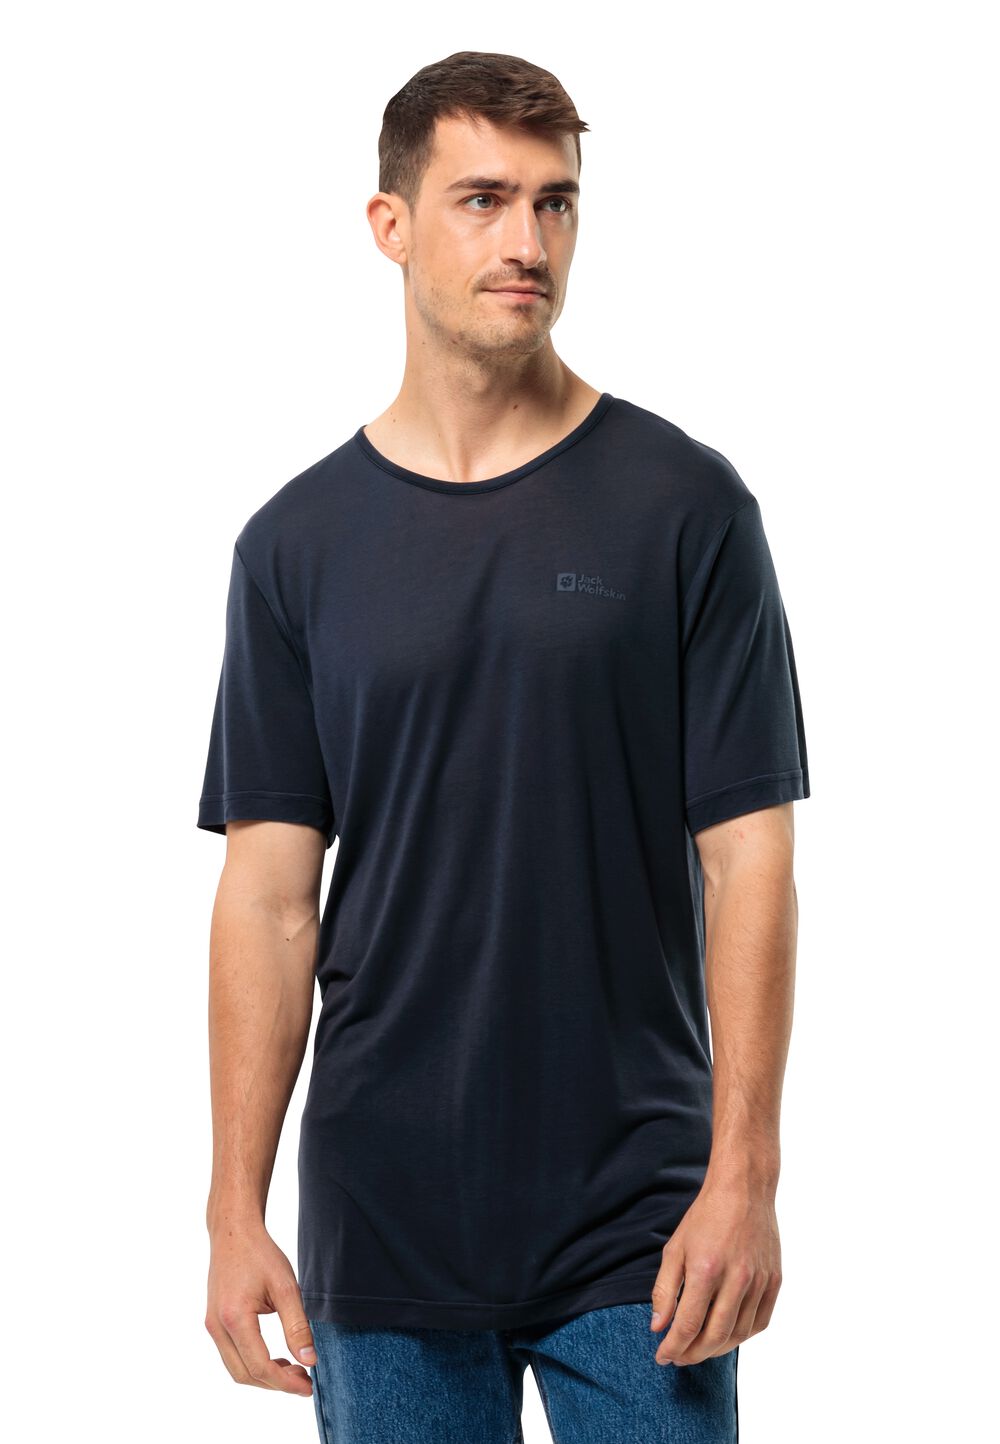 Jack Wolfskin Mola T-Shirt Men Functioneel shirt Heren XL blue night blue